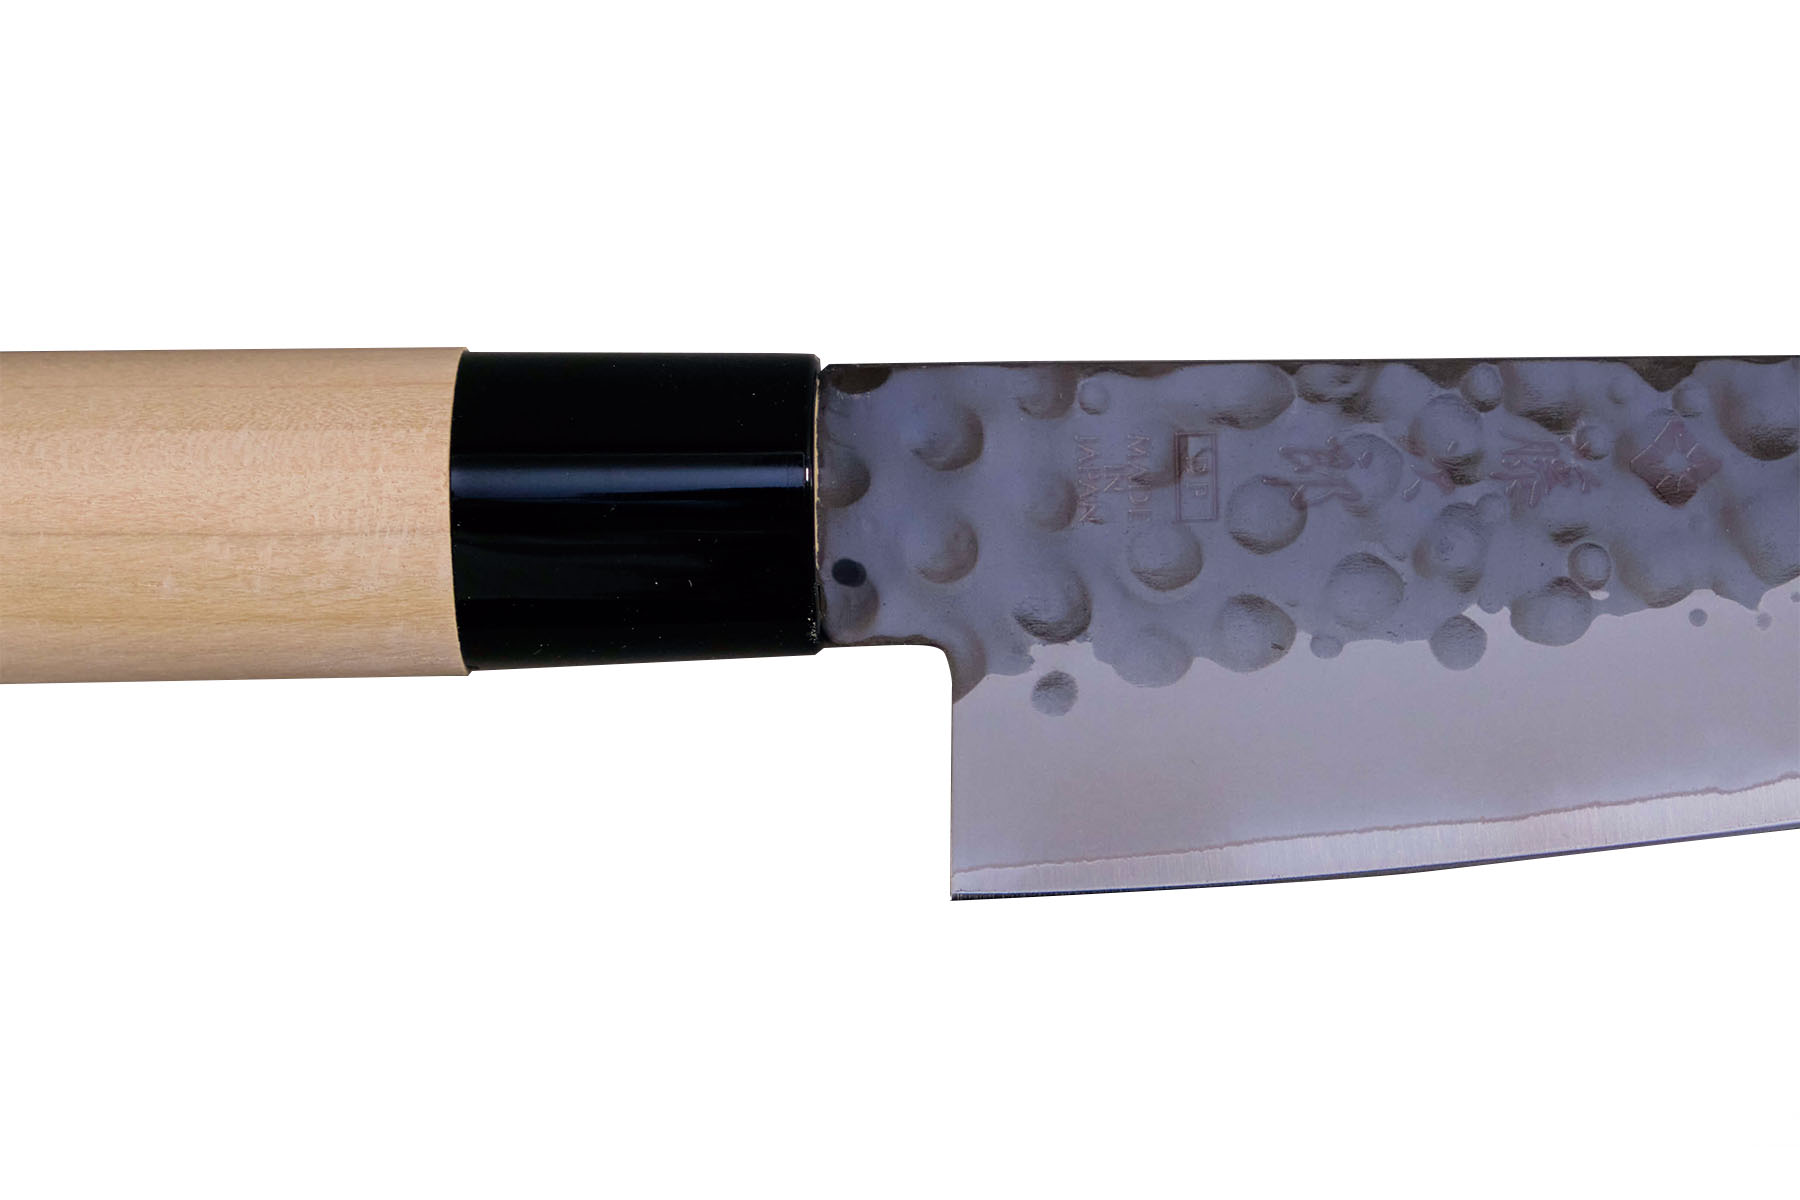 Couteau japonais Tojiro Zen Hammered - couteau de chef 18 cm